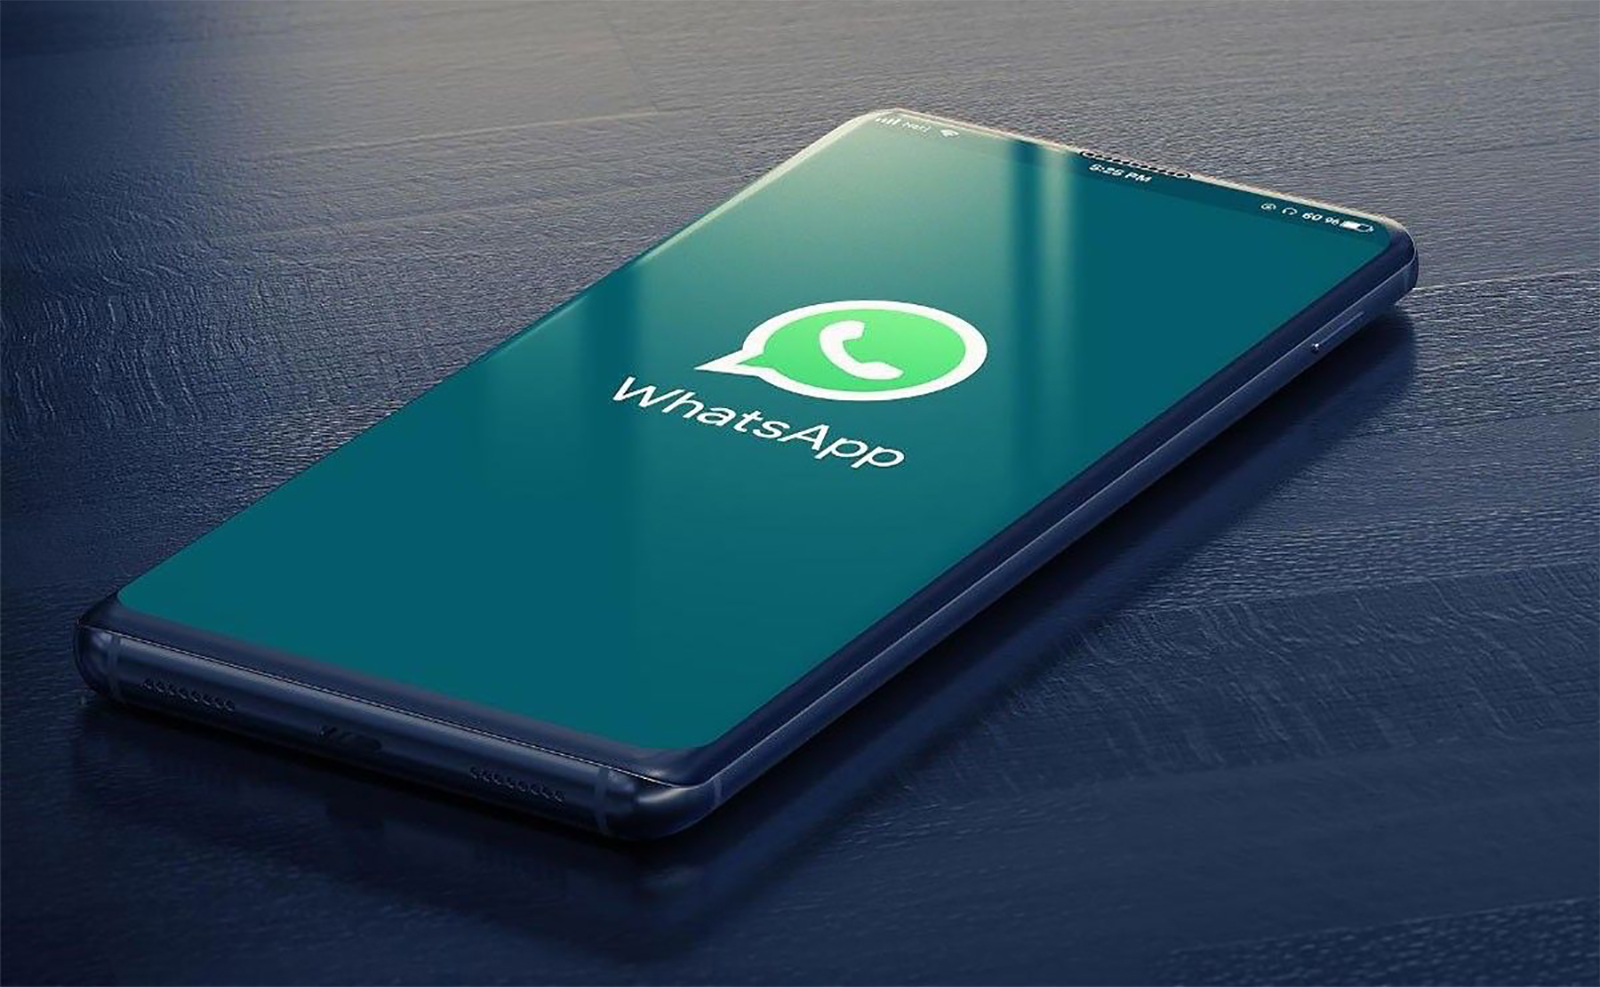 WhatsApp launches a long-awaited super feature soon